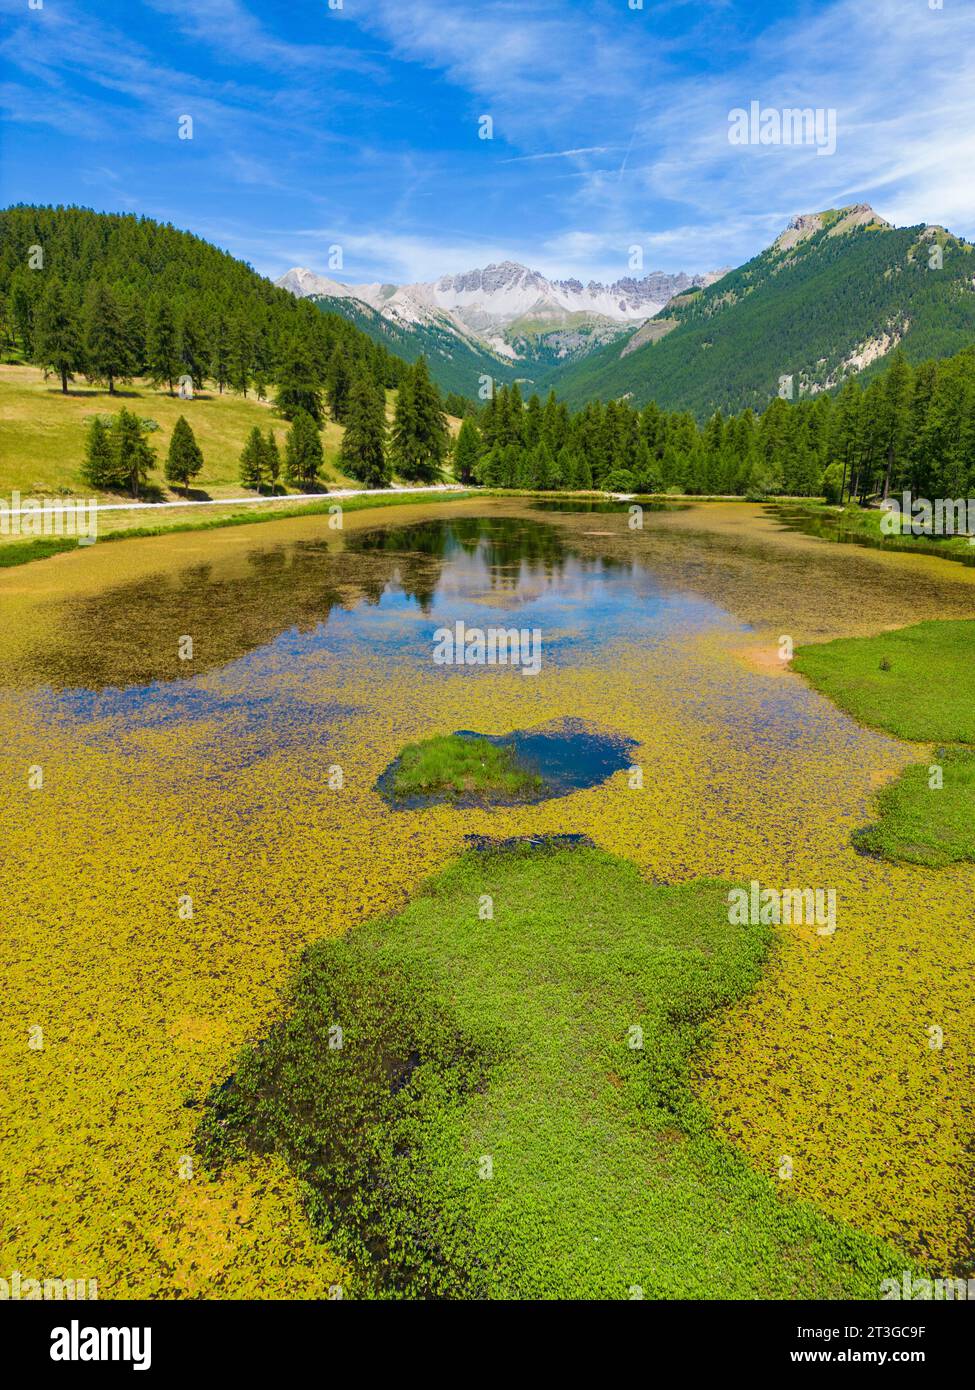 France, Hautes-Alpes, Parc naturel régional du Queyras, Lac d'Arvieux roue entouré d'une forêt de mélèzes (Larix decidua) (vue aérienne) Banque D'Images